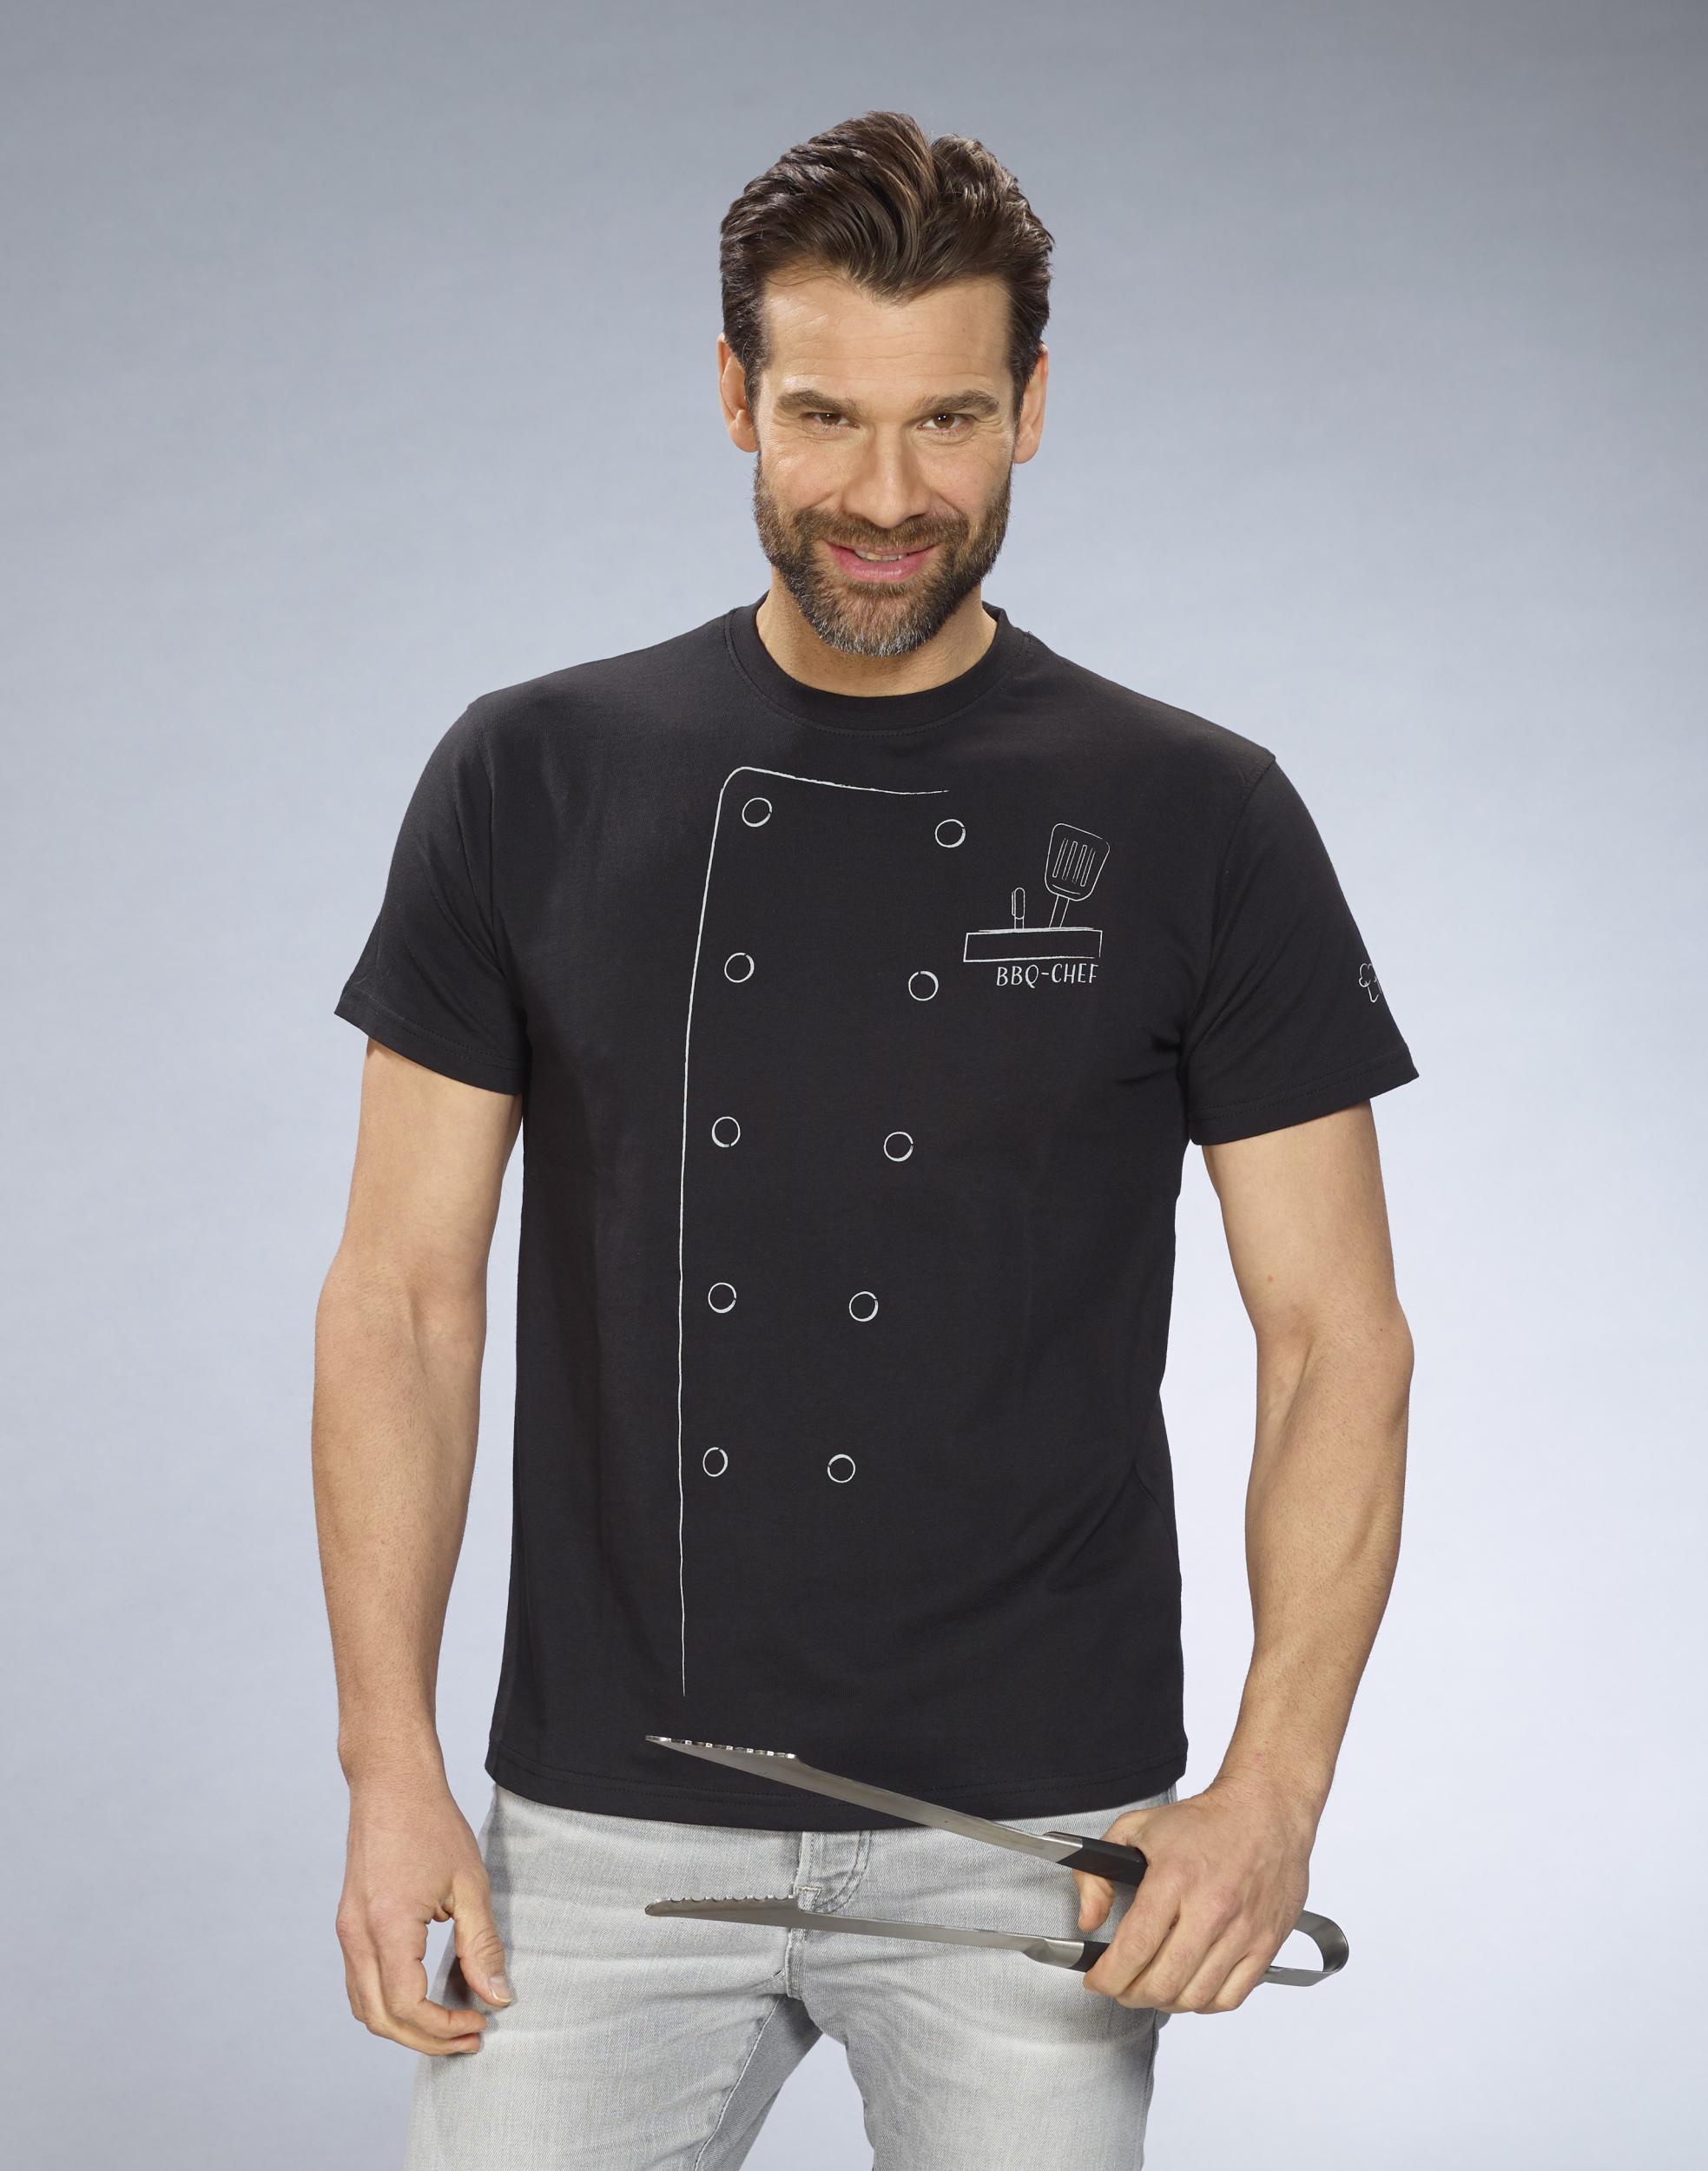 T-Shirt Grillmeister, Farbe schwarz, Gr.M